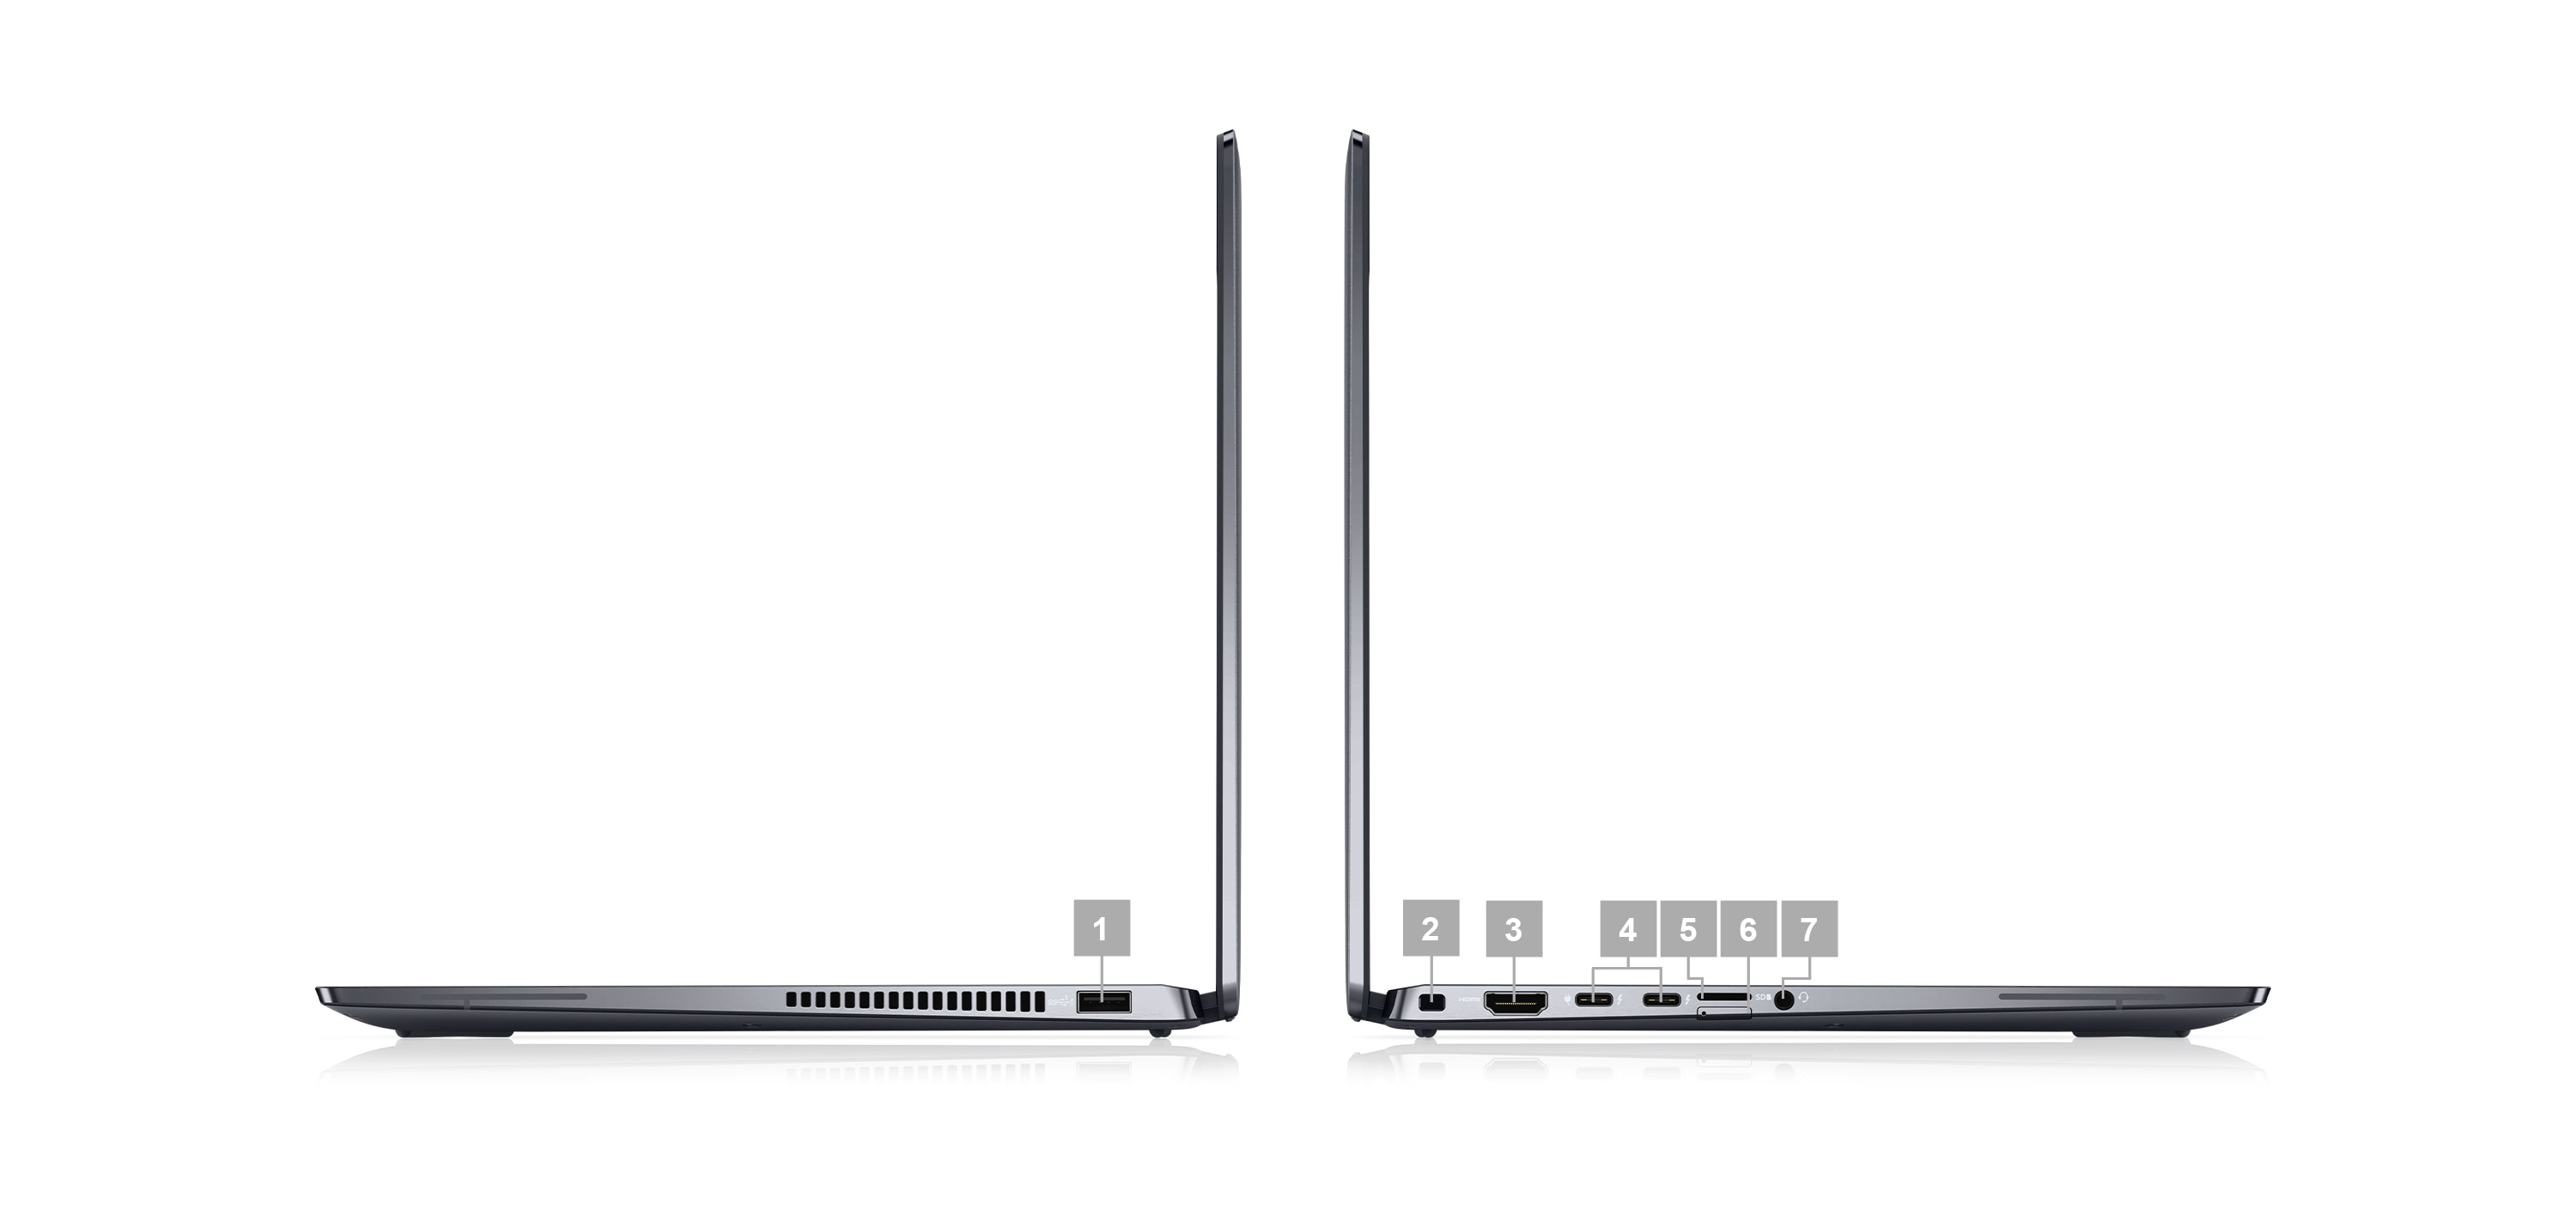 Imagine cu două laptopuri Dell Latitude 2 în 1 de 14” 9430, amplasate pe lateral, însoțite de numere de la 1 la 7 care indică porturile produsului.